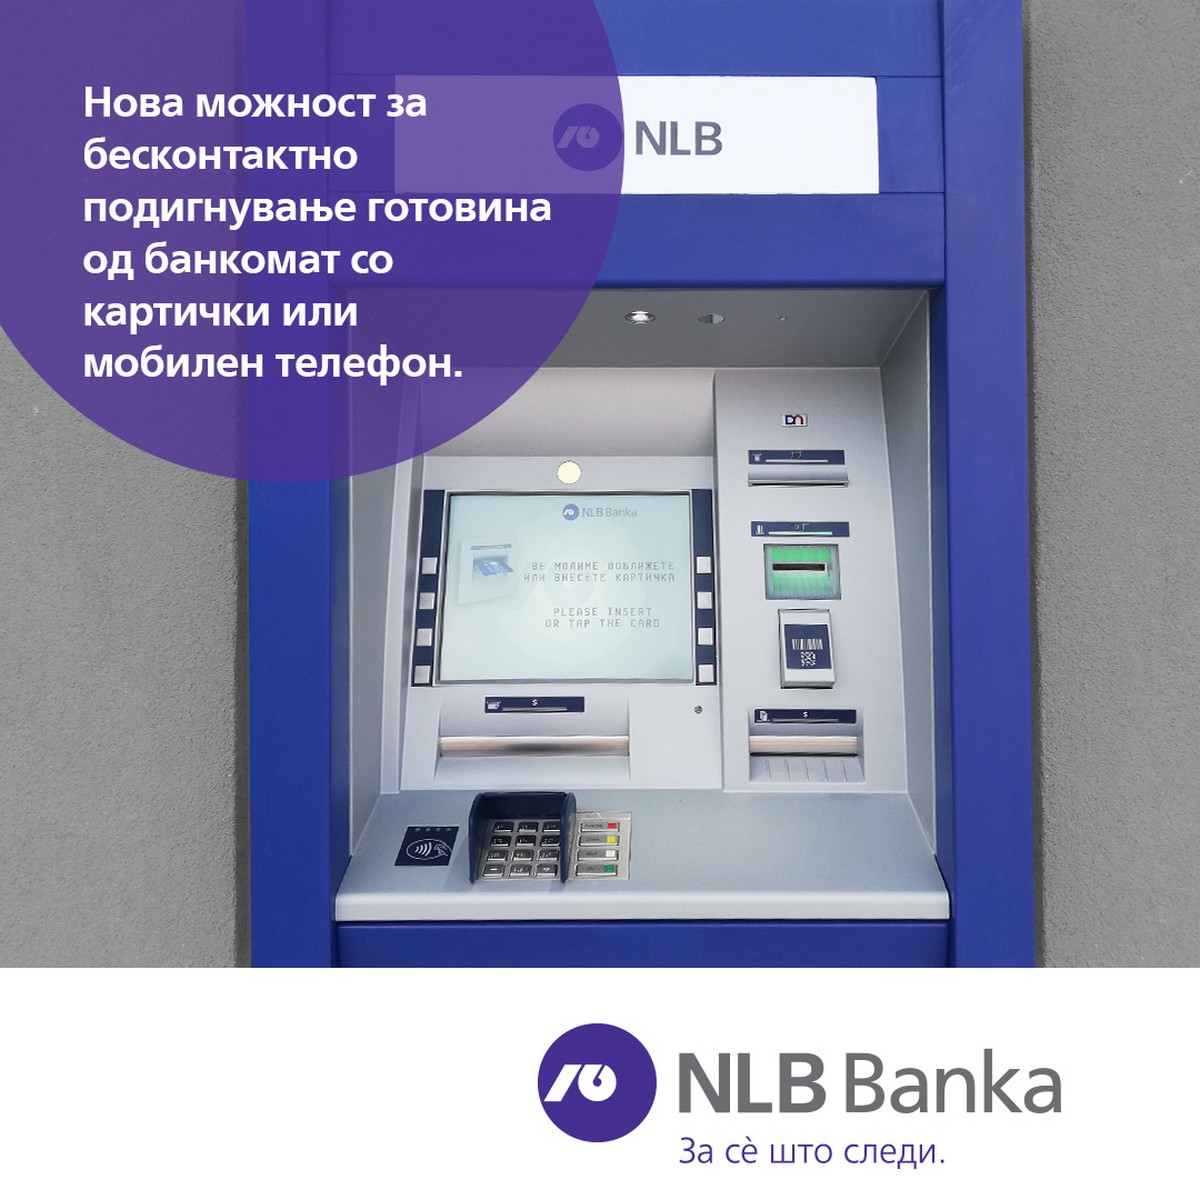 nlb-banka-vovede-mozhnost-za-beskontaktni-transakcii-na-bankomatite01.jpg